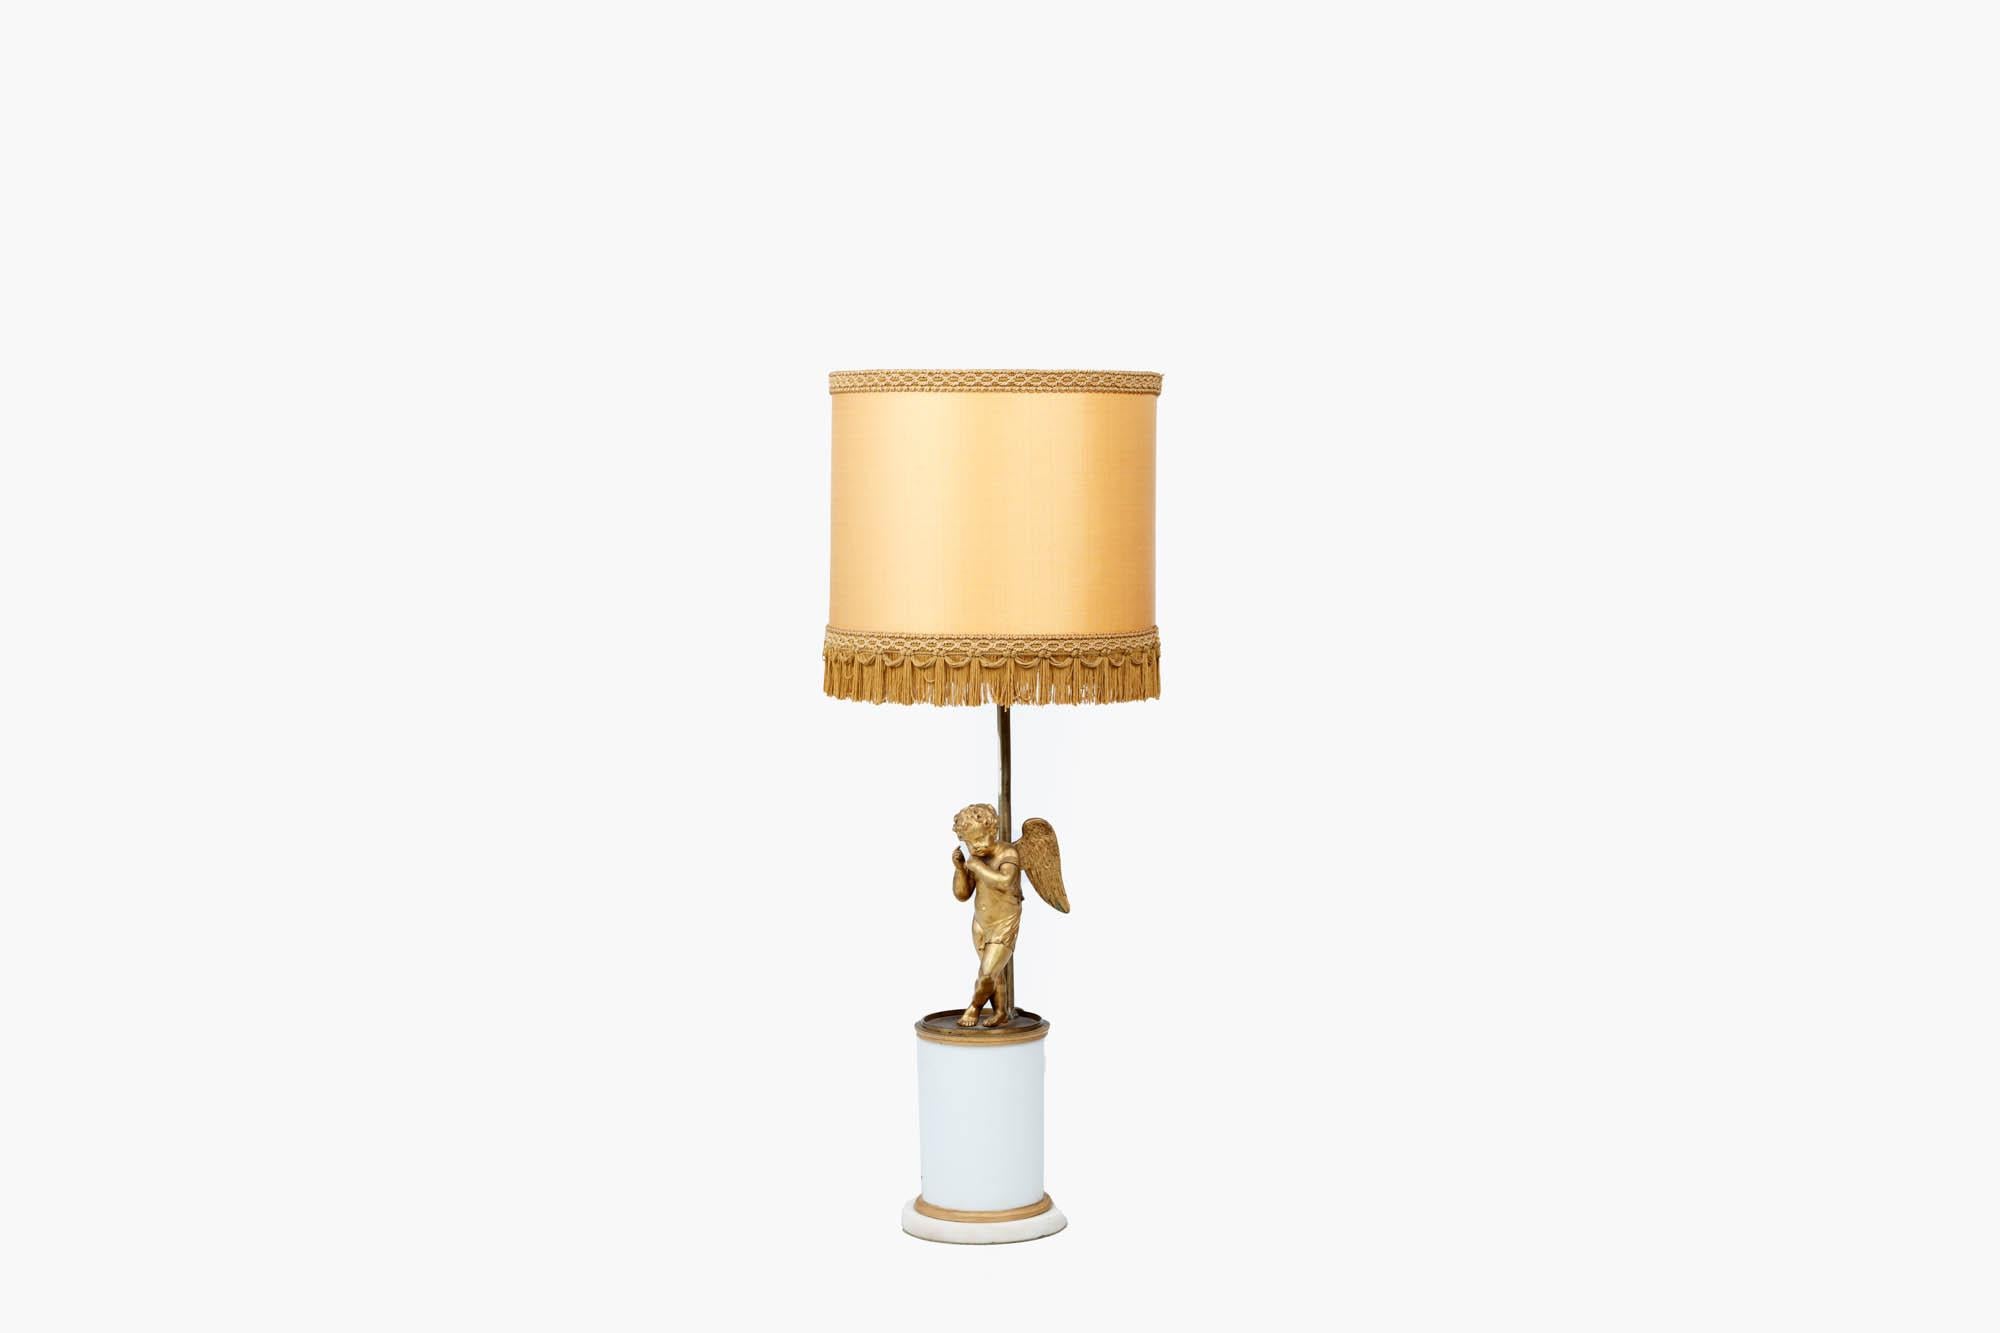 Tischlampe des frühen 20. Jahrhunderts im neoklassizistischen Stil mit geflügelter Puttenfigur über einem schweren, weißen, zylindrischen Säulensockel mit vergoldeten Bändern an Kopf und Fuß.